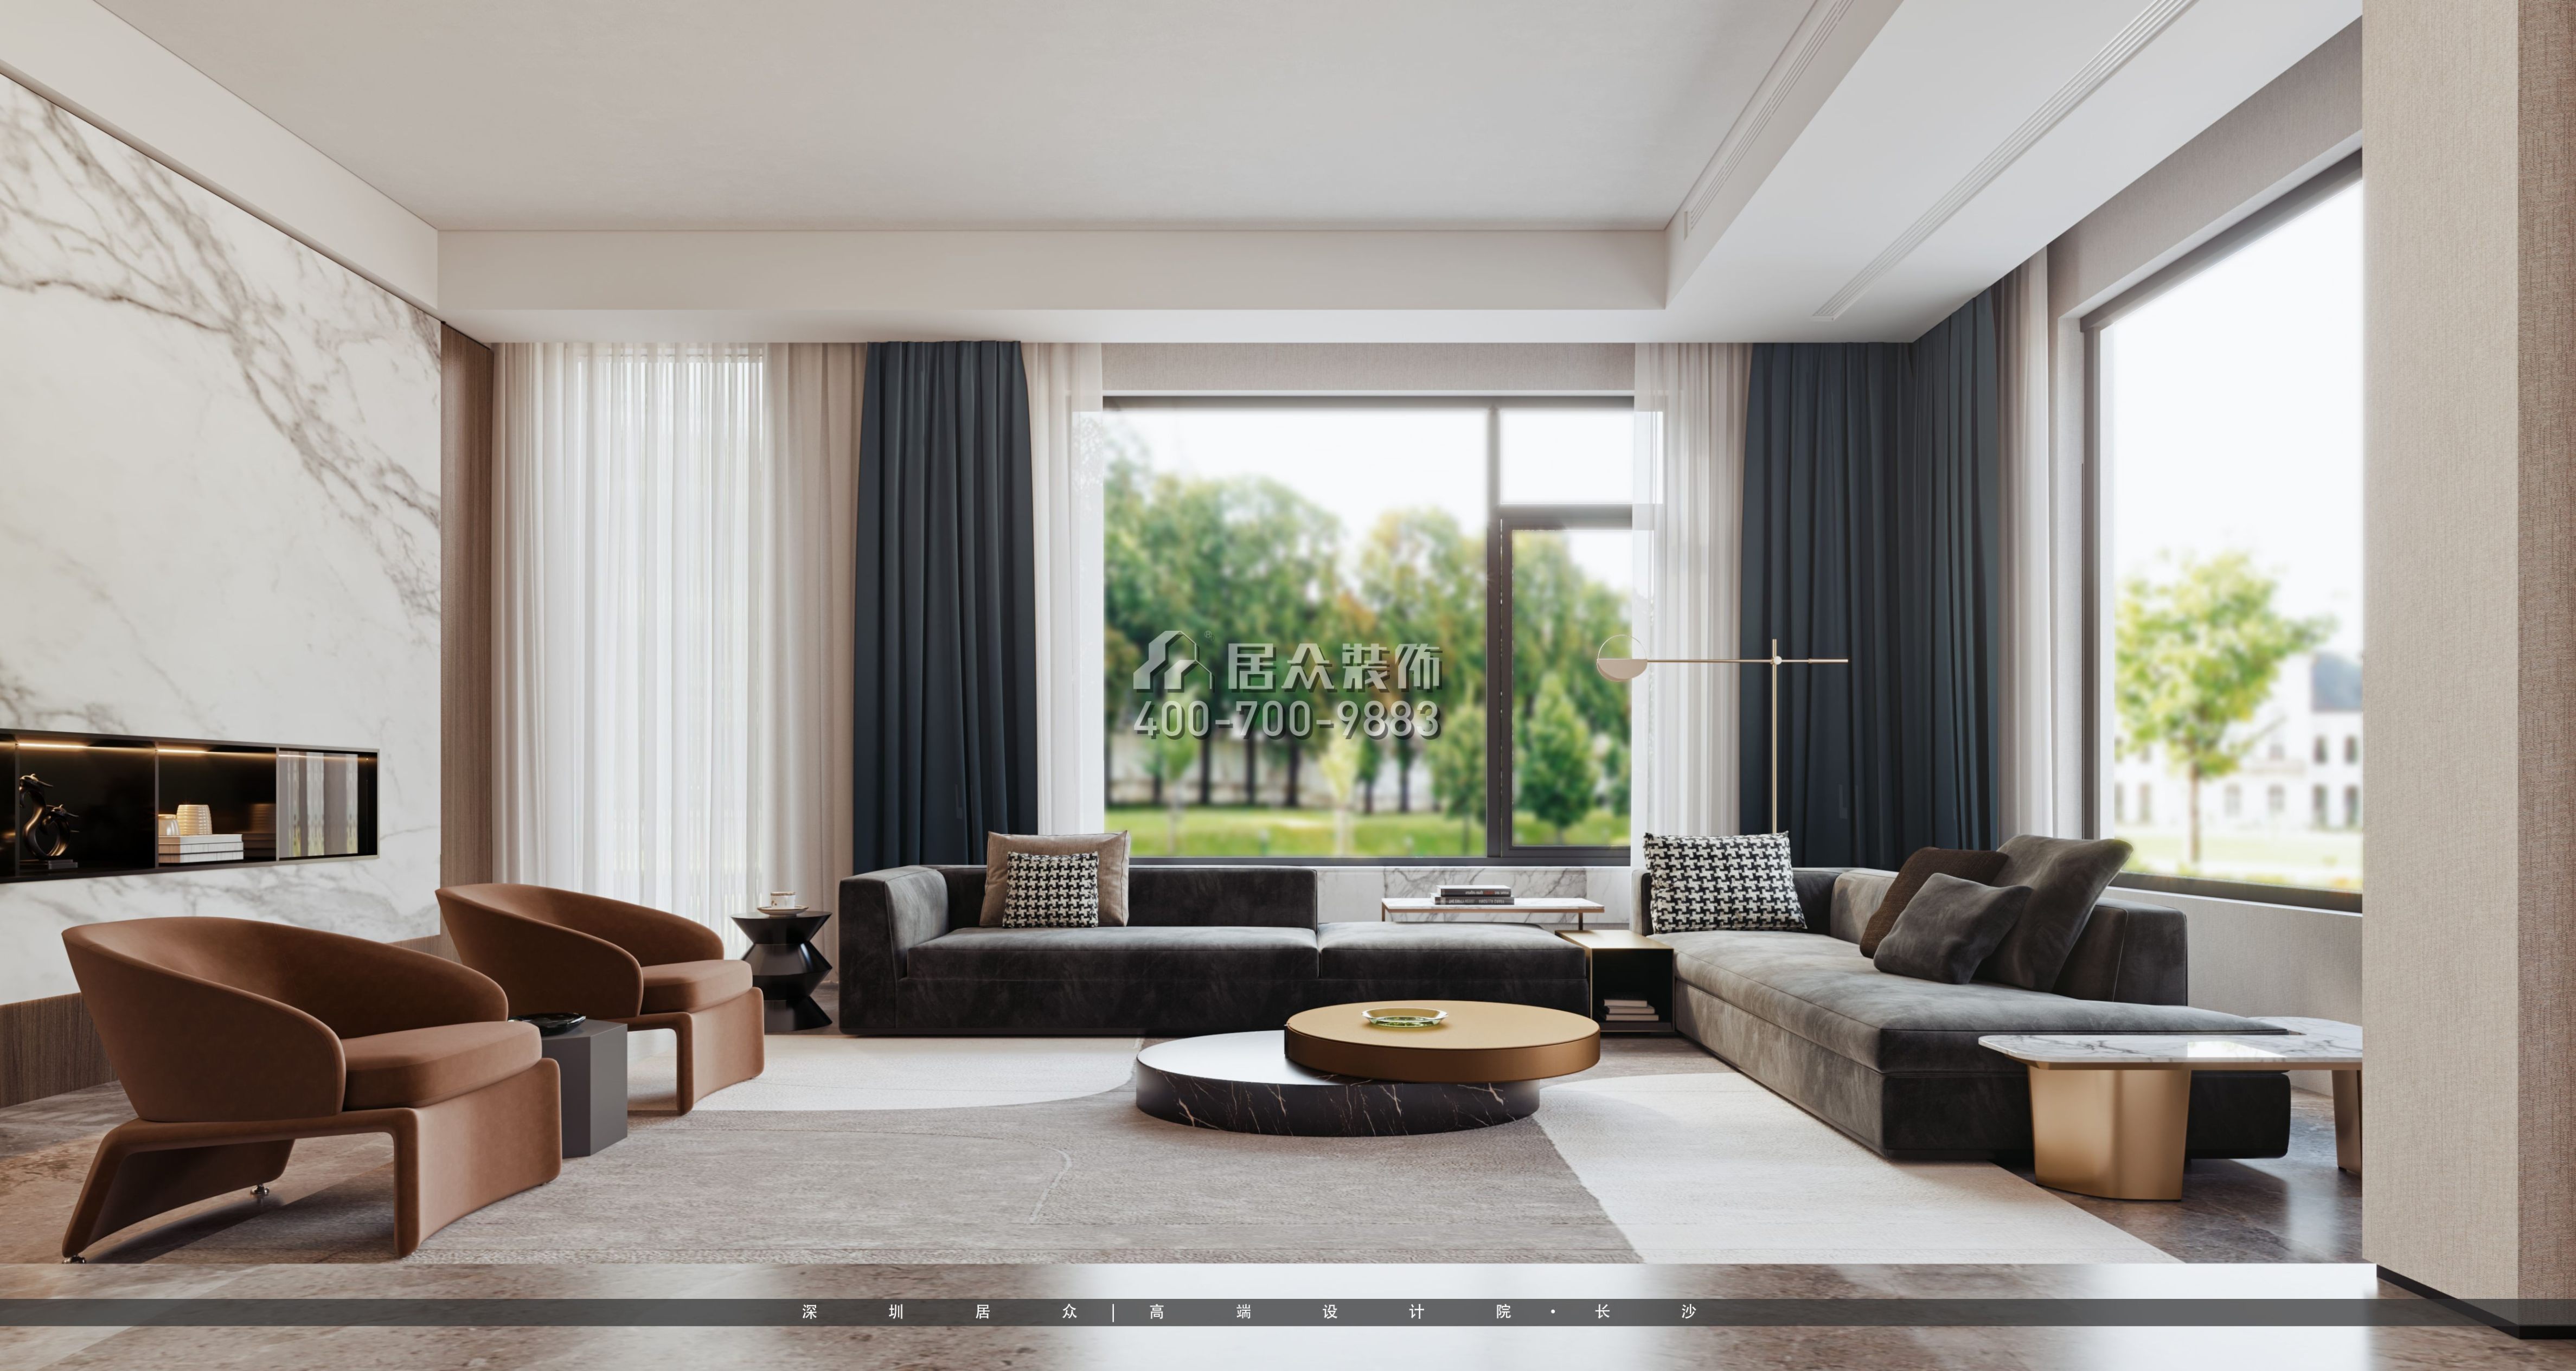 龙湖560平方米现代简约风格别墅户型客厅装修效果图